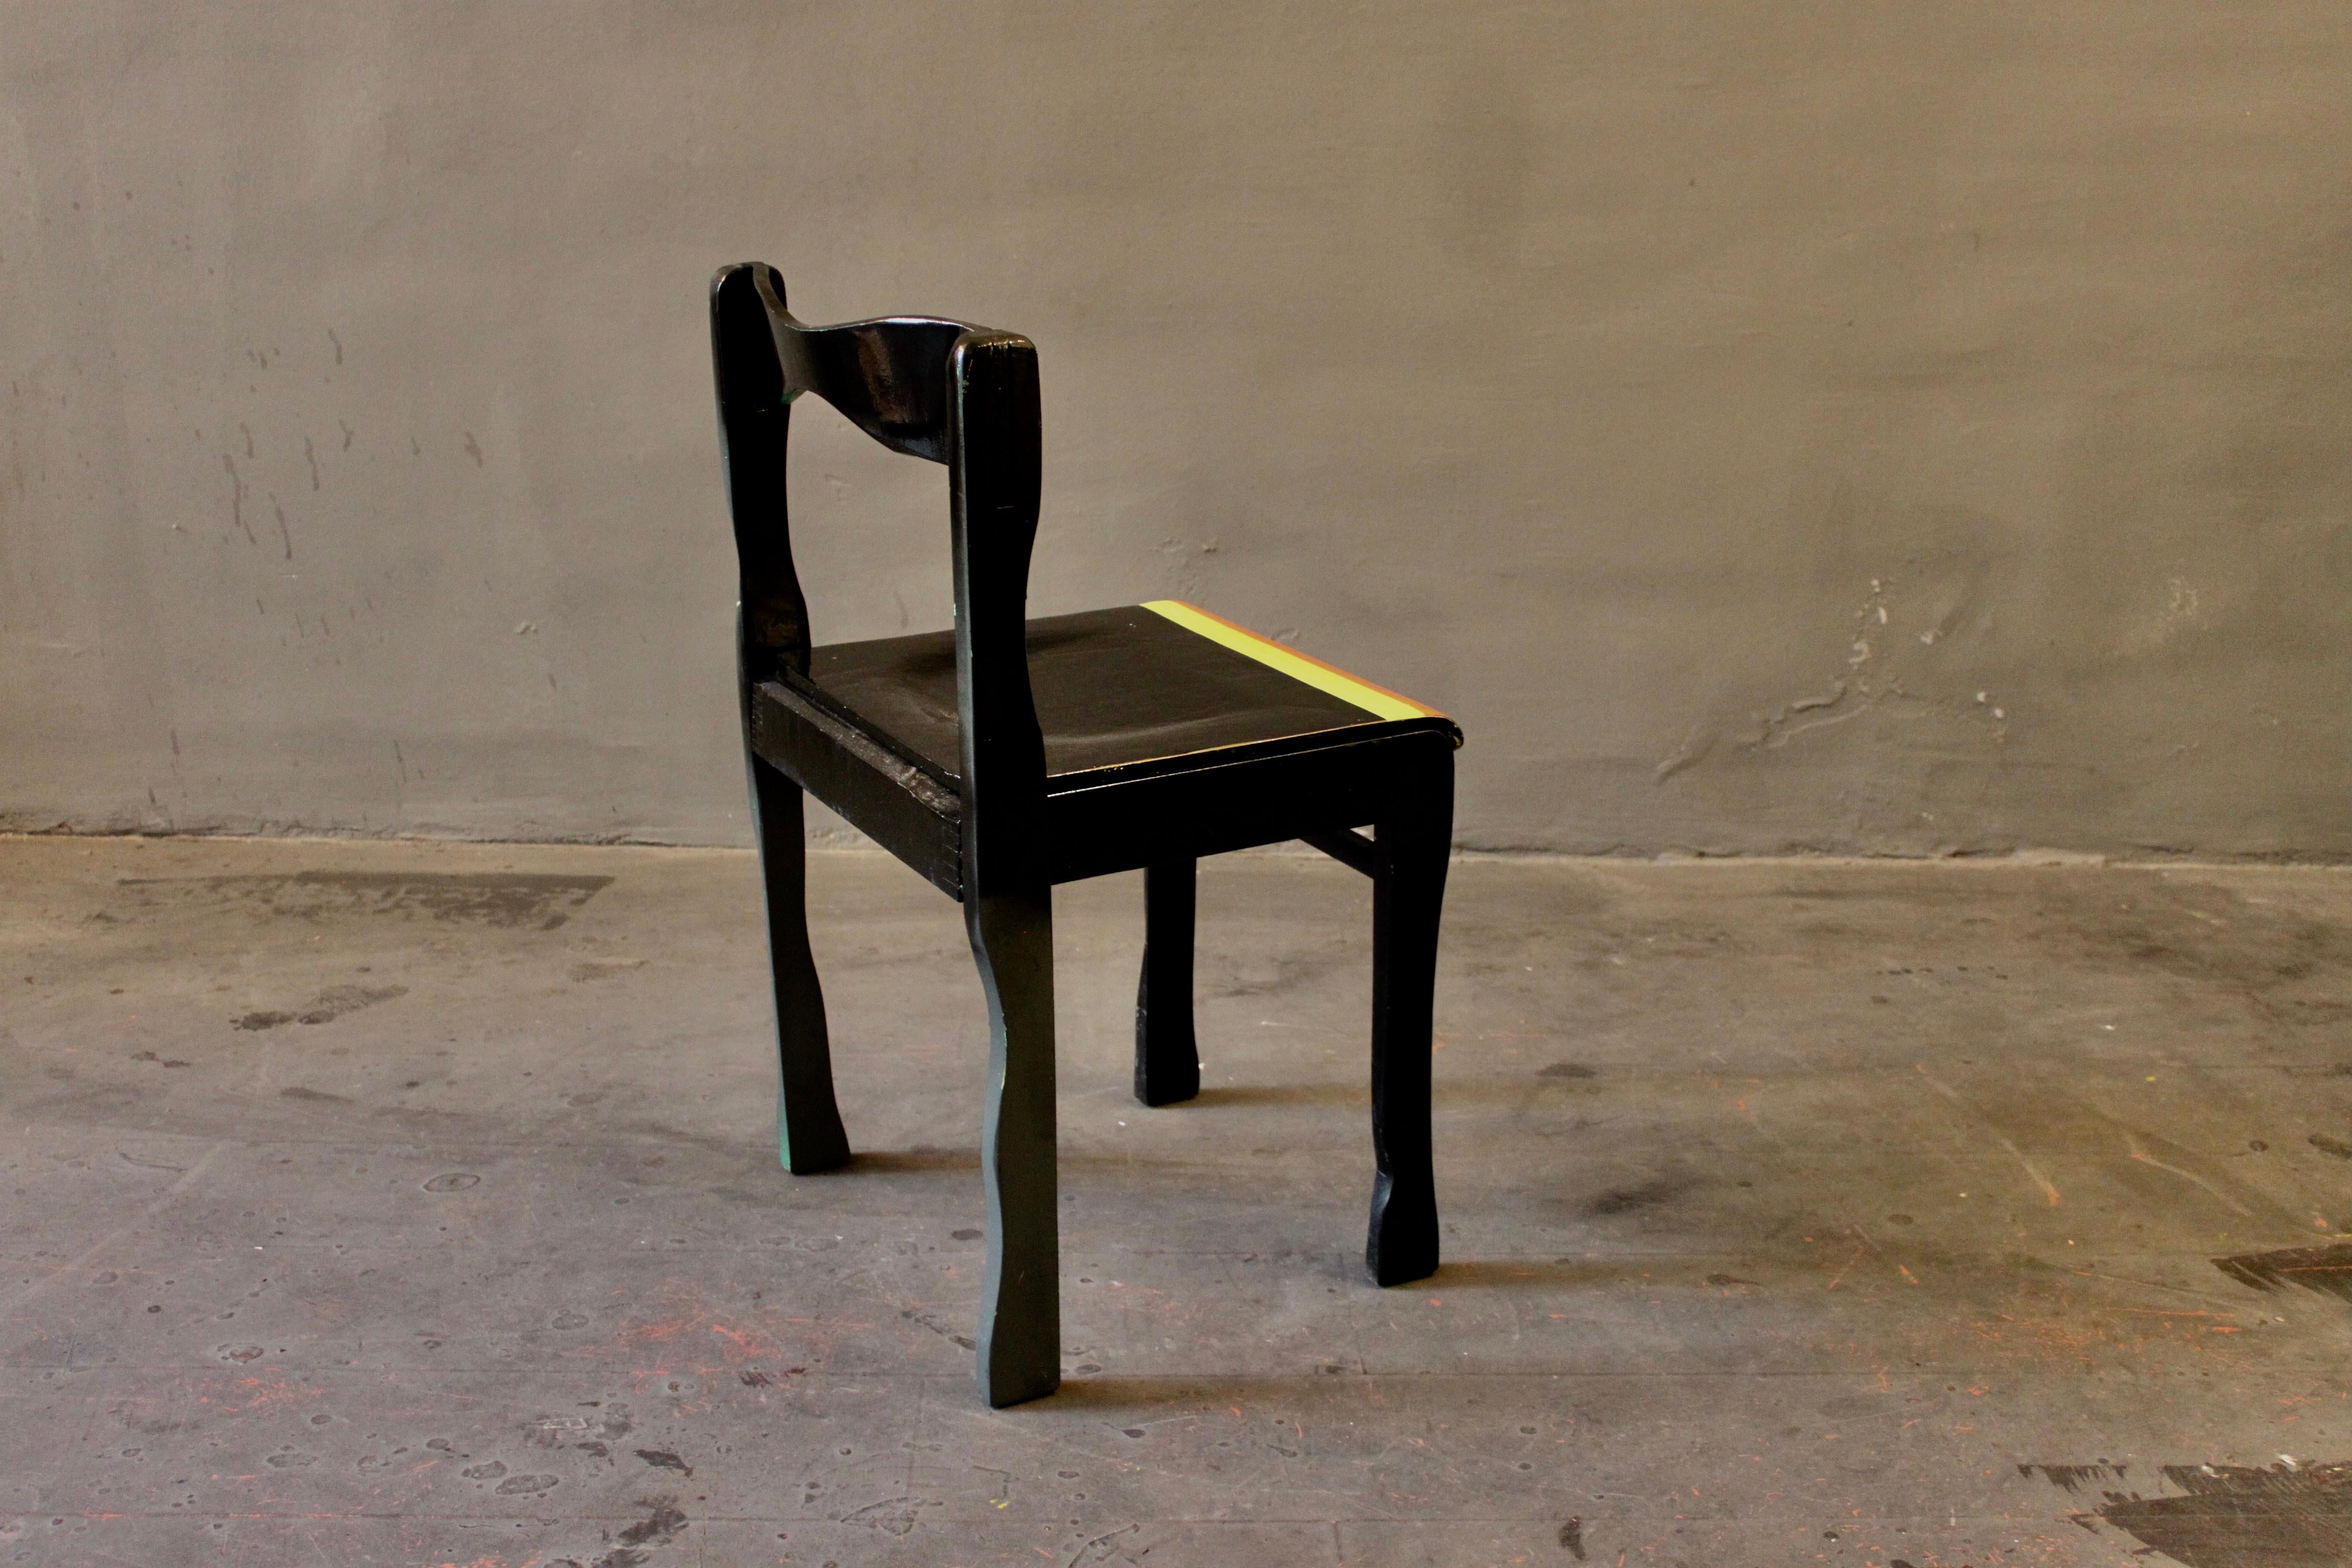 Chaise classique du milieu du siècle, remodelée, peinte et multi-lacquée. Une œuvre typique des débuts de Markus Friedrich Staab et une œuvre d'art fonctionnelle parfaite.

Par mon travail, je transforme chaque chaise en un objet unique et